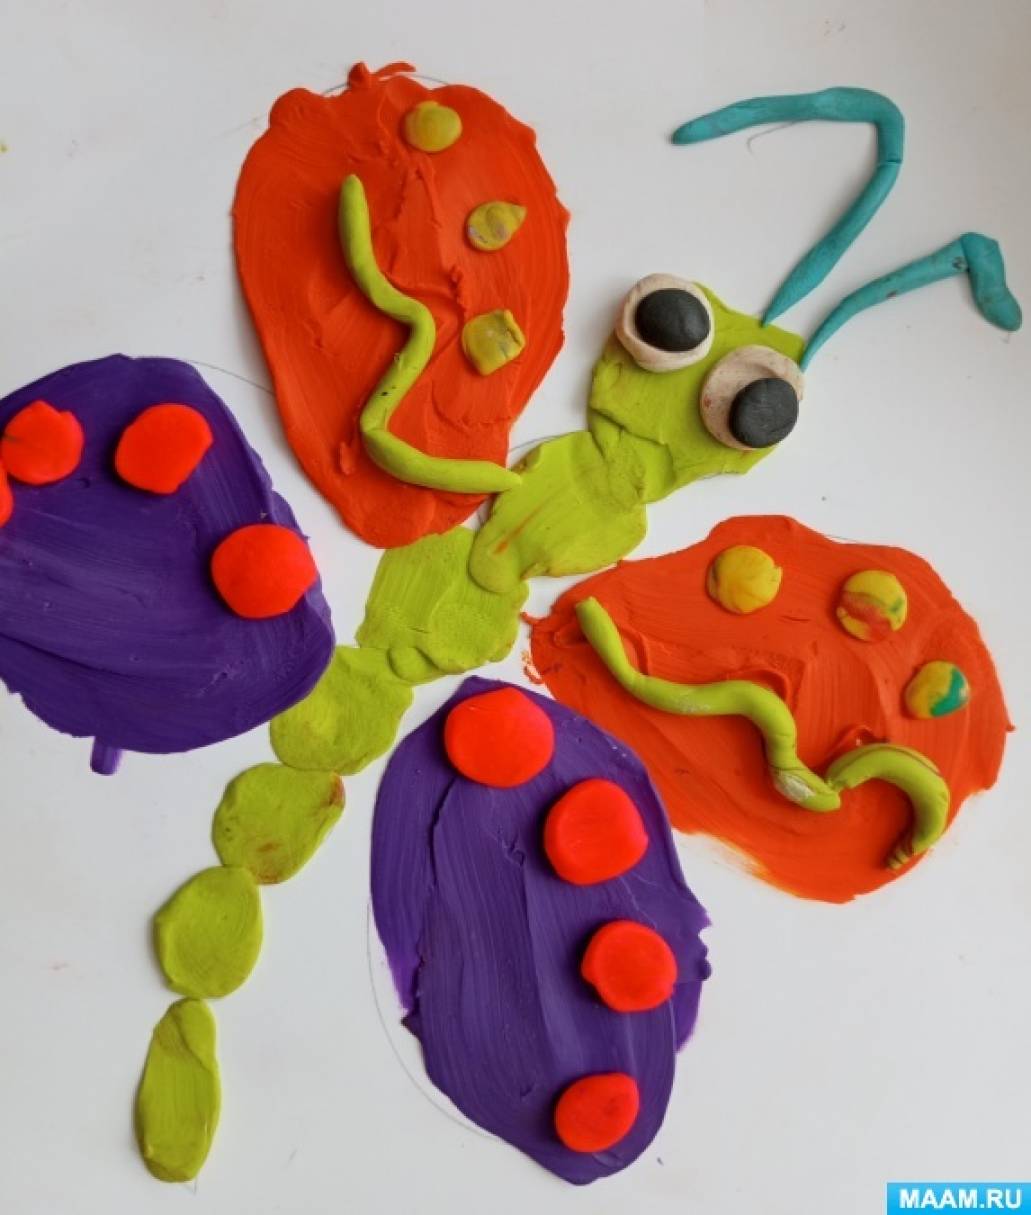 Детский мастер-класс по пластилинографии «Бабочка проснулась, солнцу улыбнулась» для старших дошкольников